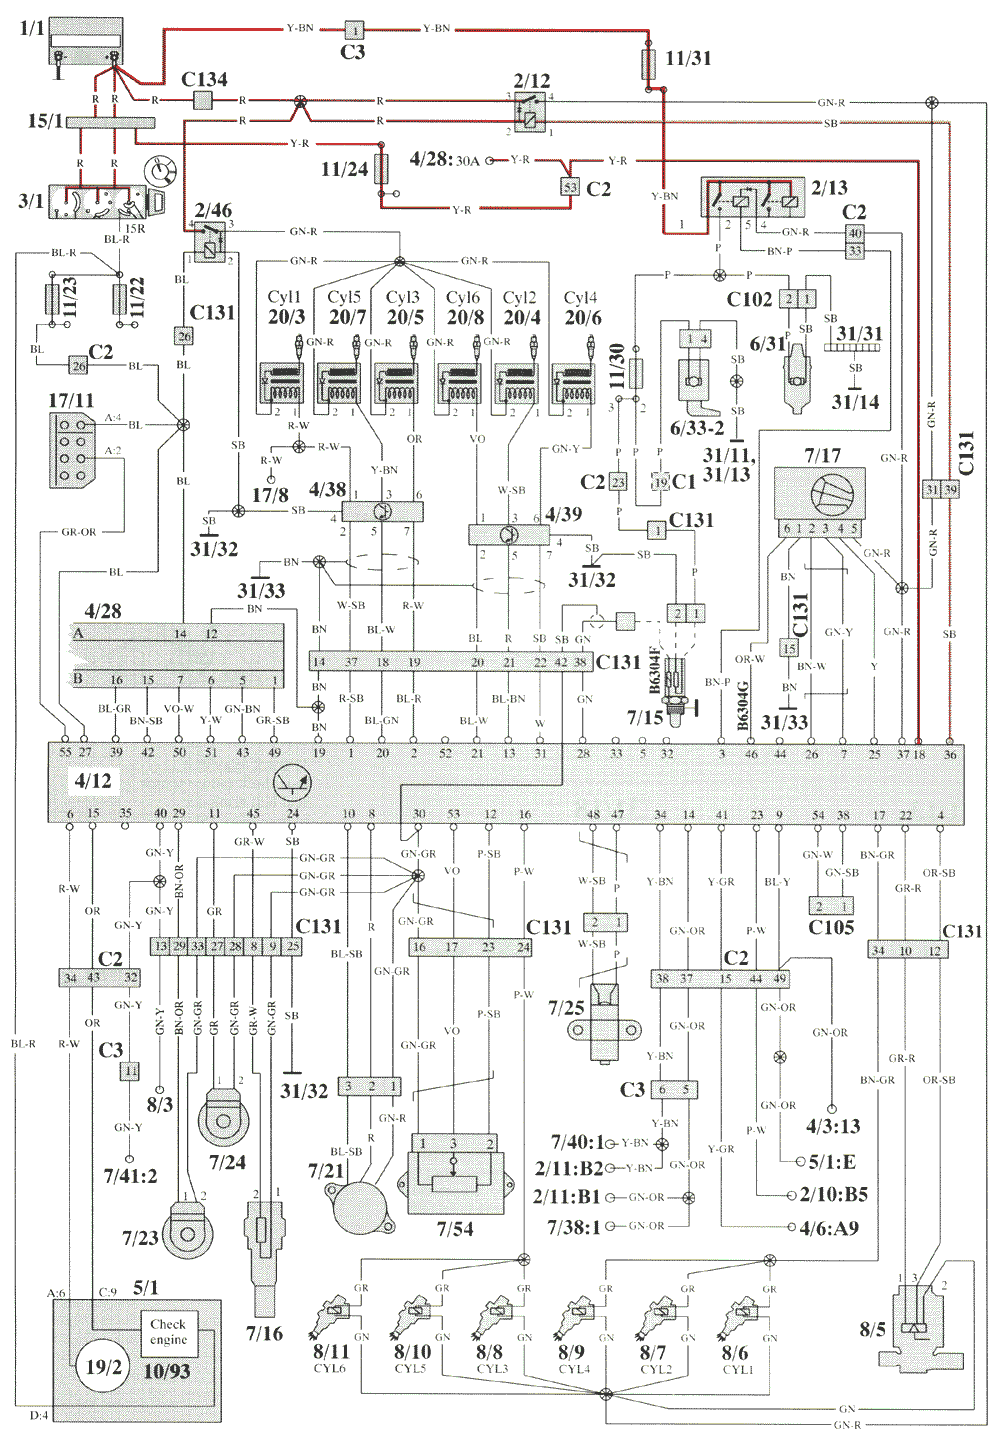 1983 volvo 245 lh 2.1 wiring diagram